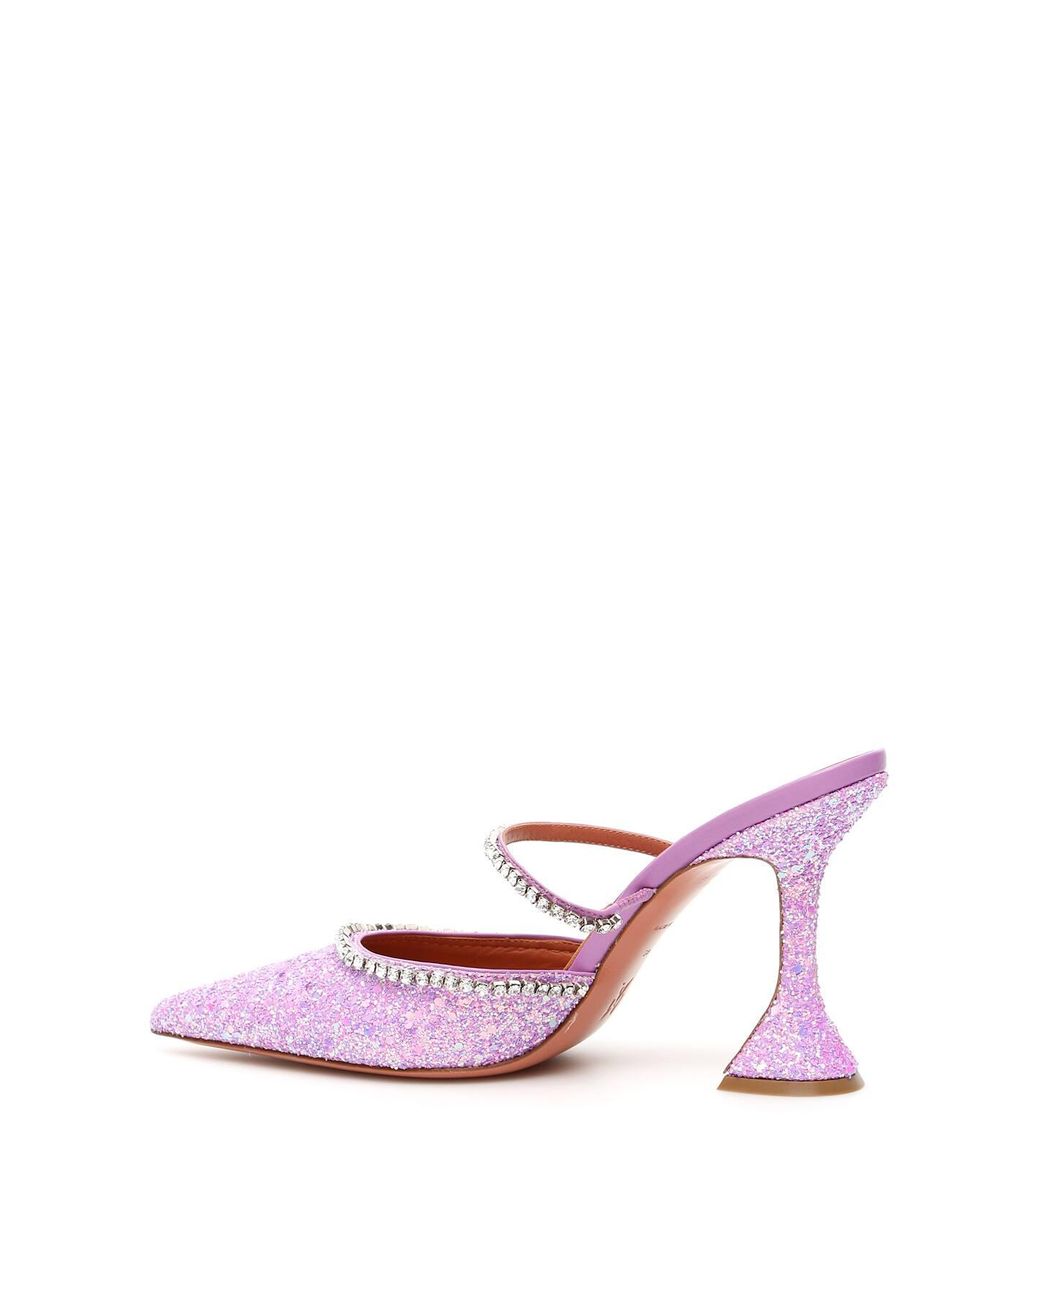 AMINA MUADDI Glitter Gilda Mules in Pink | Lyst